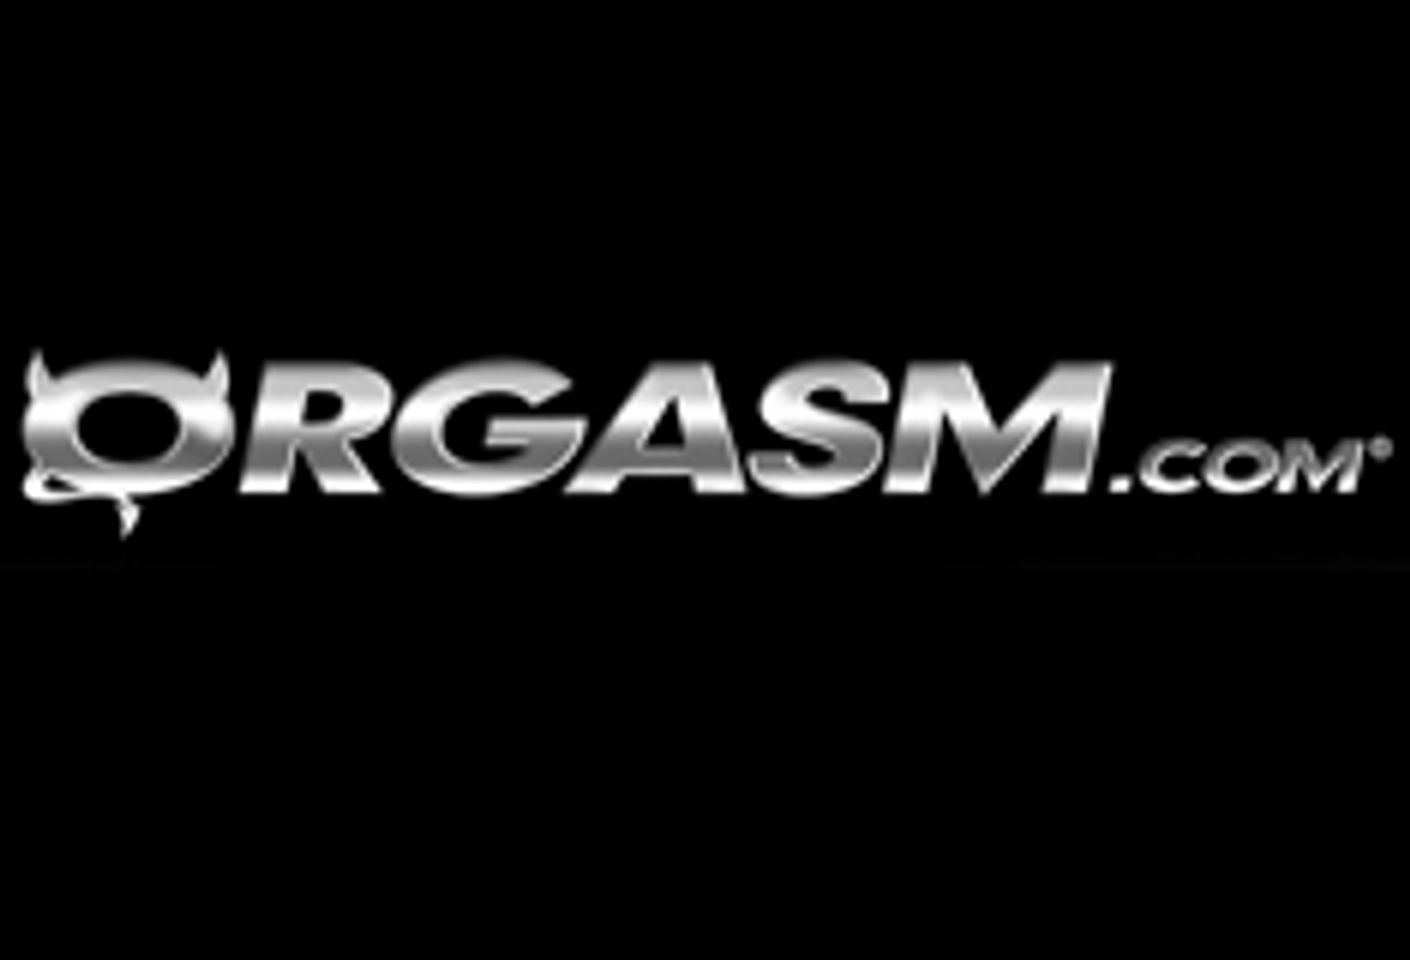 Orgasm.com Unleashes OrgasmGirl